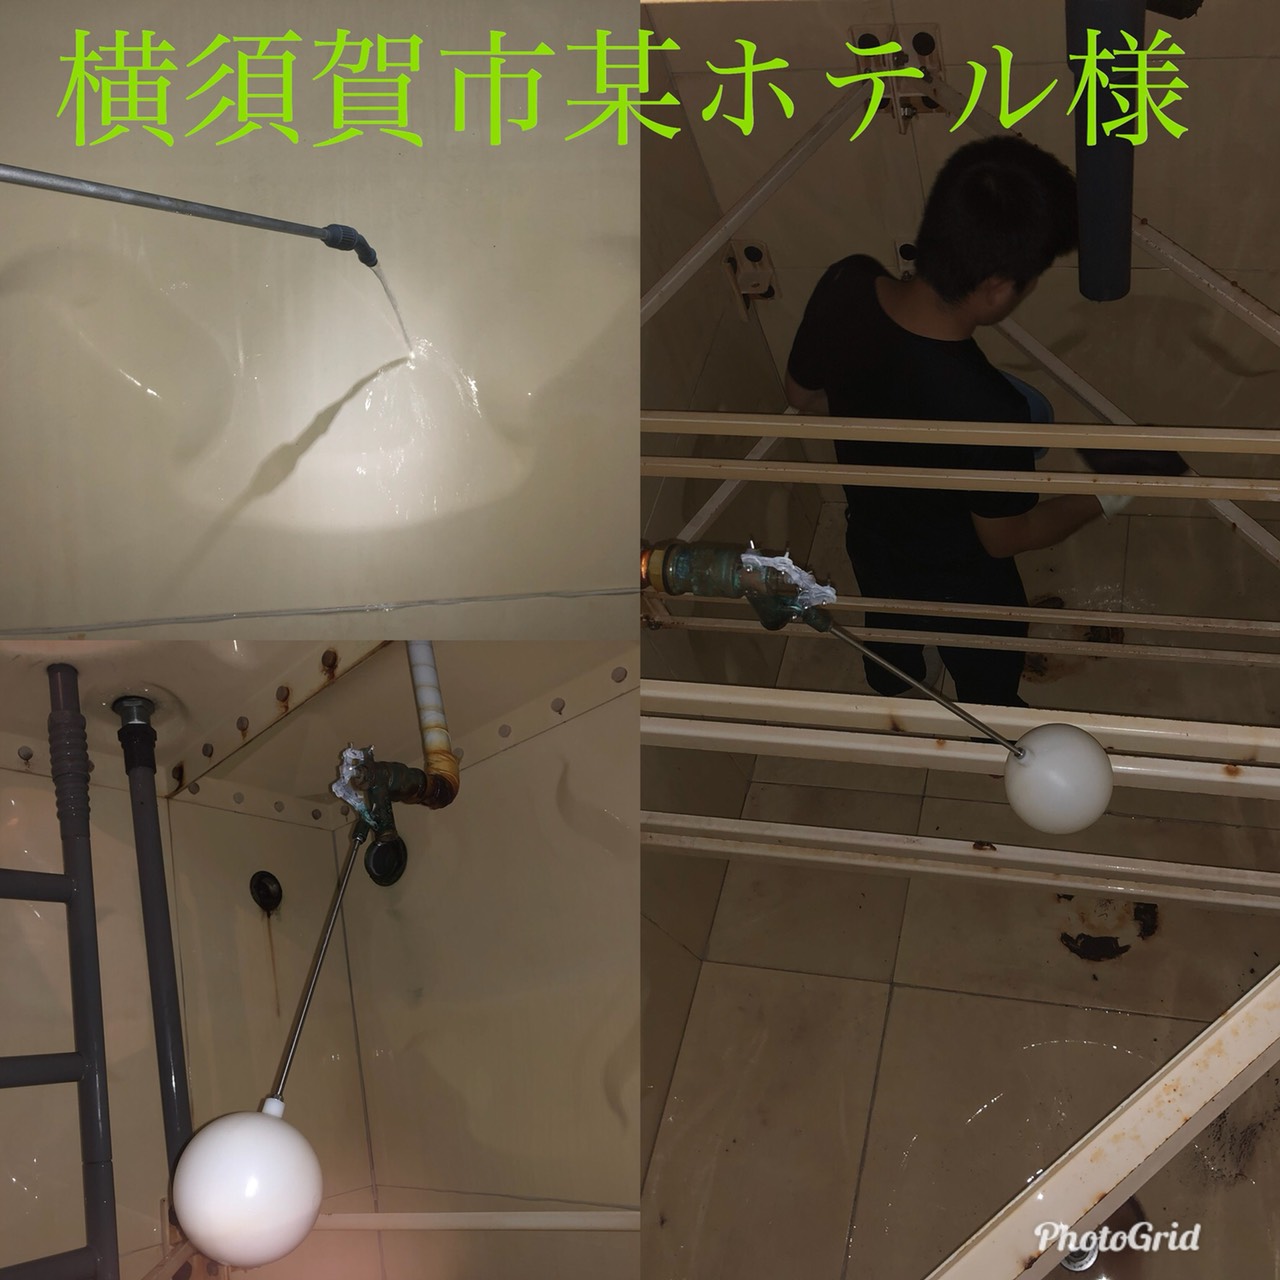 横須賀市ホテル貯水槽清掃